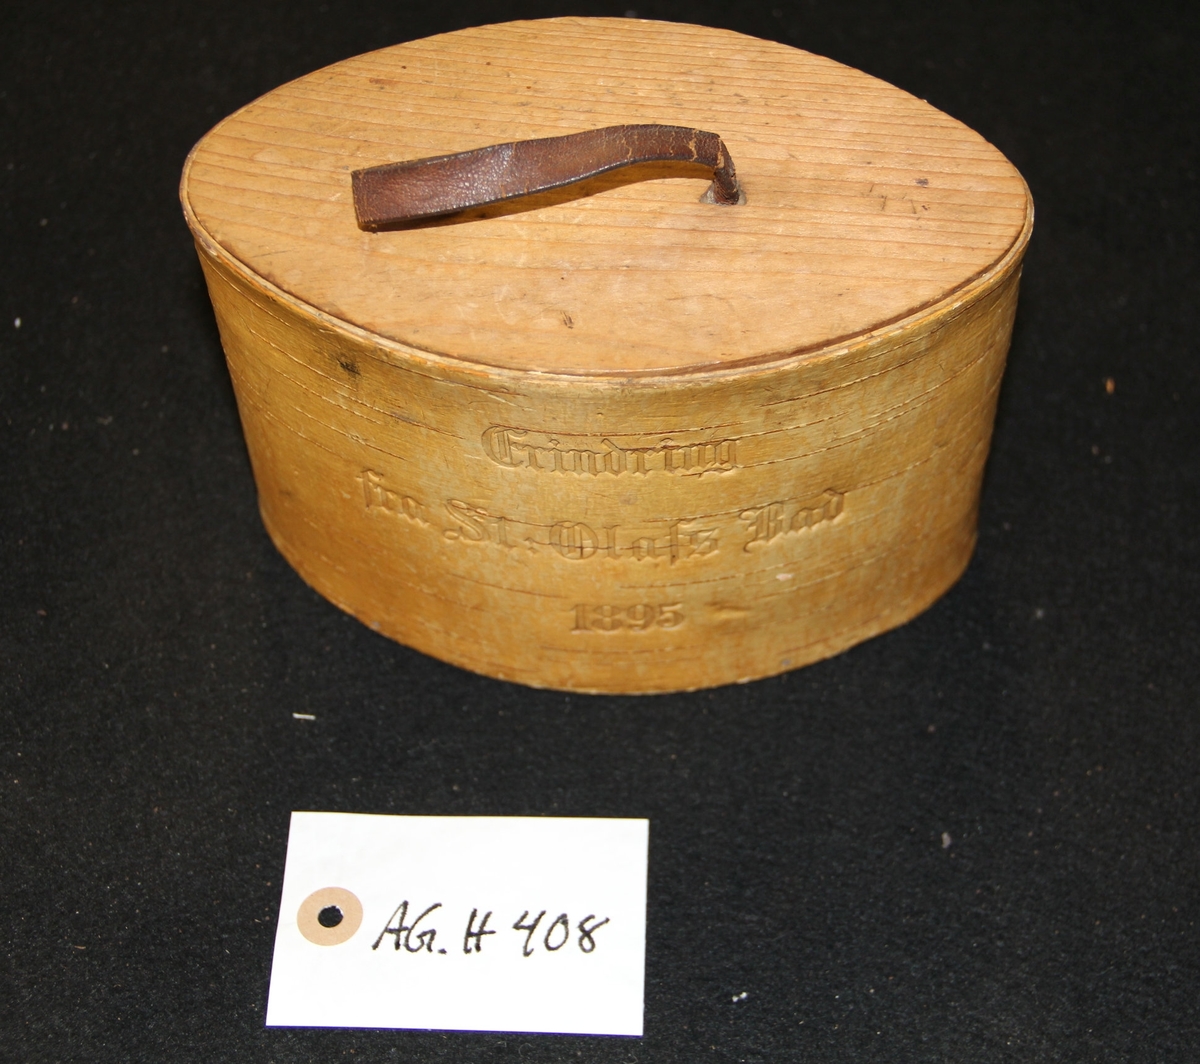 Oval tretine  og lokk med lærhåndtak. Inskribsjon på framsiden av tinen